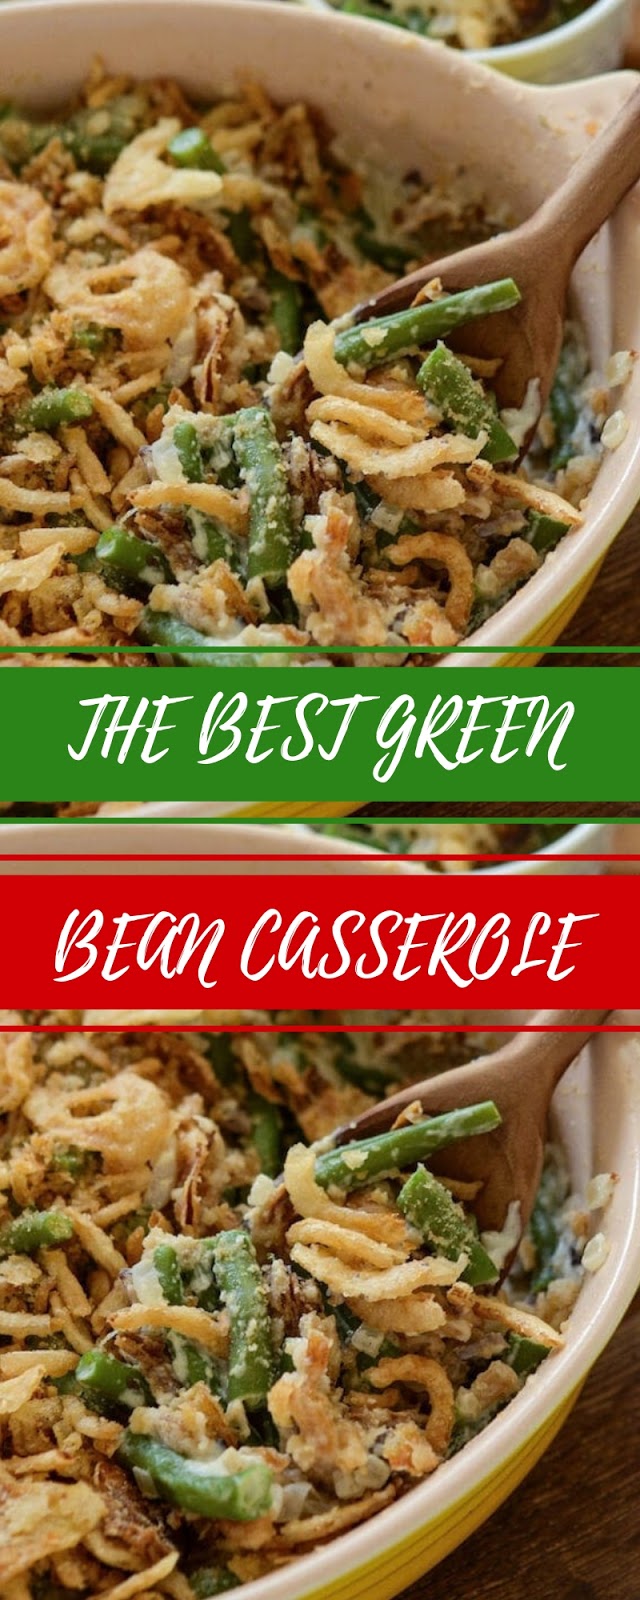 The Best Green Bean Casserole #christmas #dinner